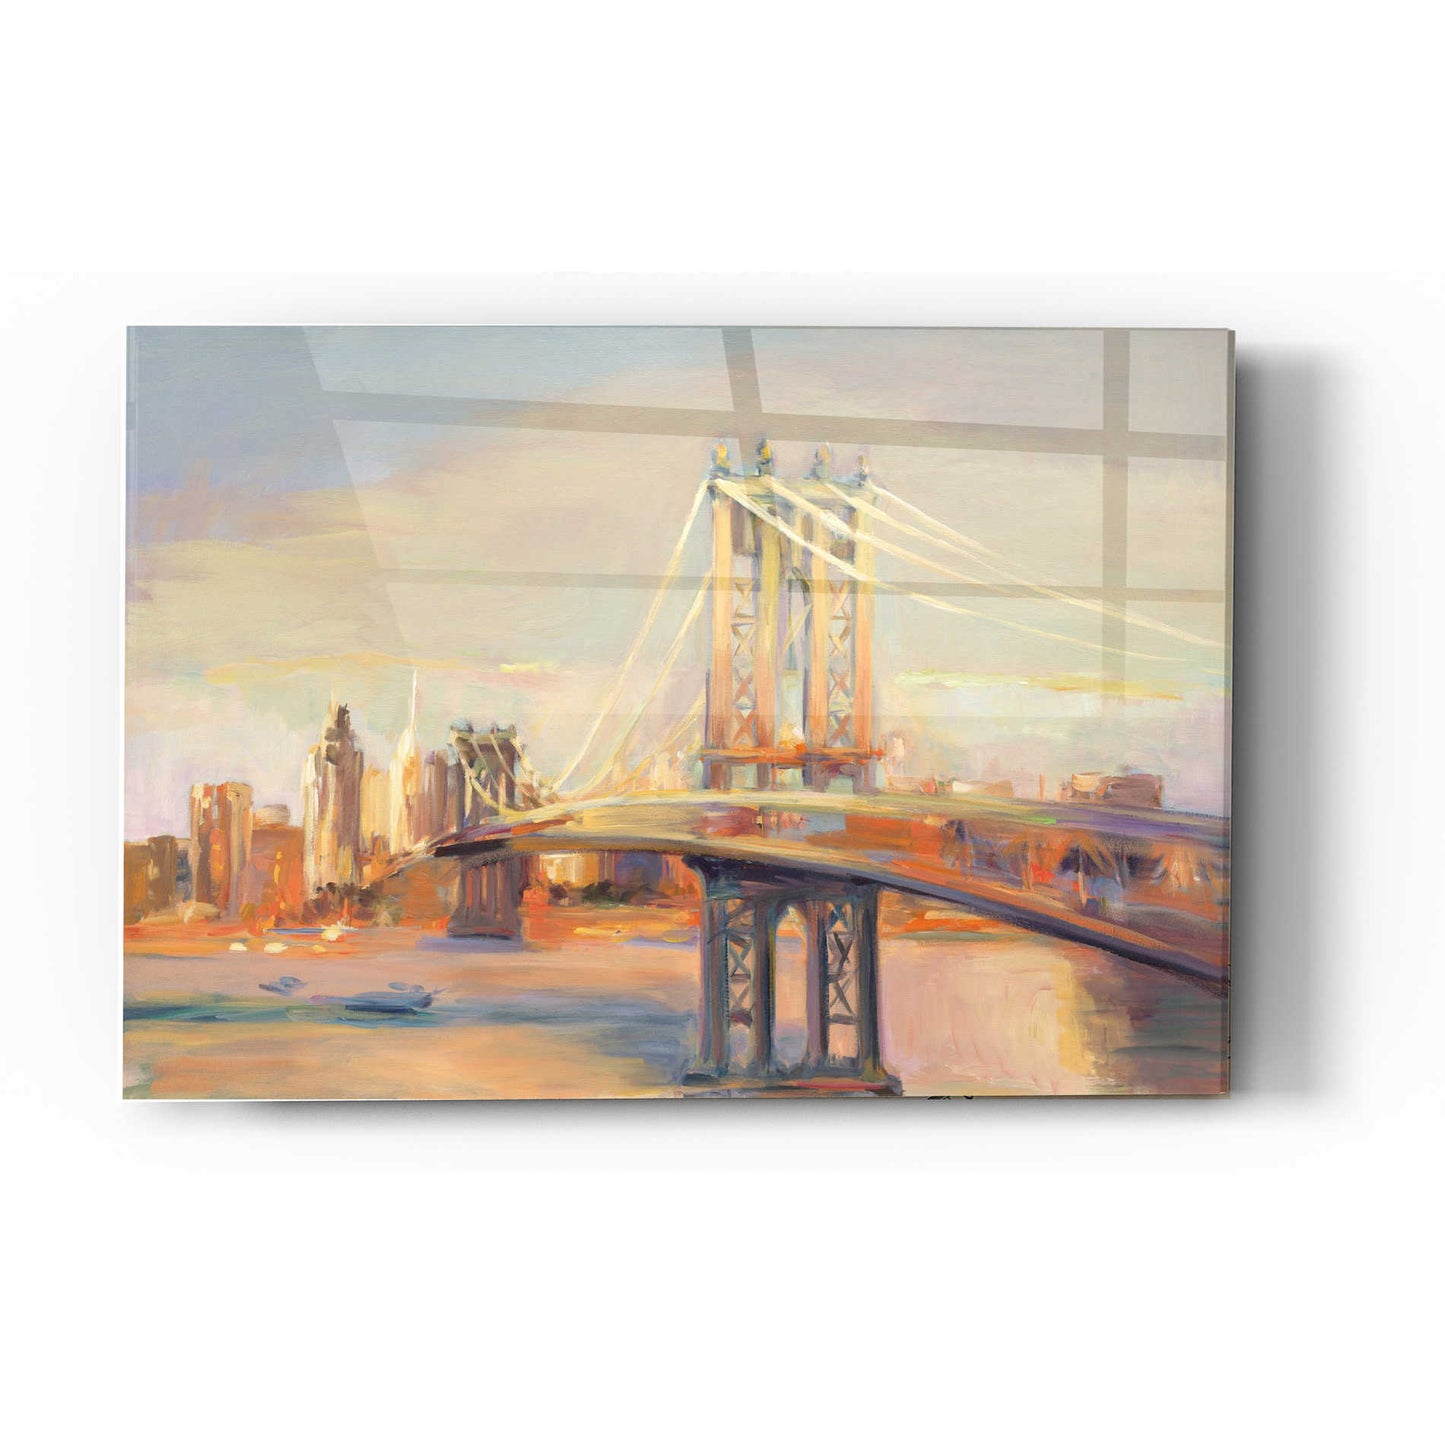 Epic Art 'Manhattan Reflection' by Marilyn Hageman, Acrylic Glass Wall Art,12x16